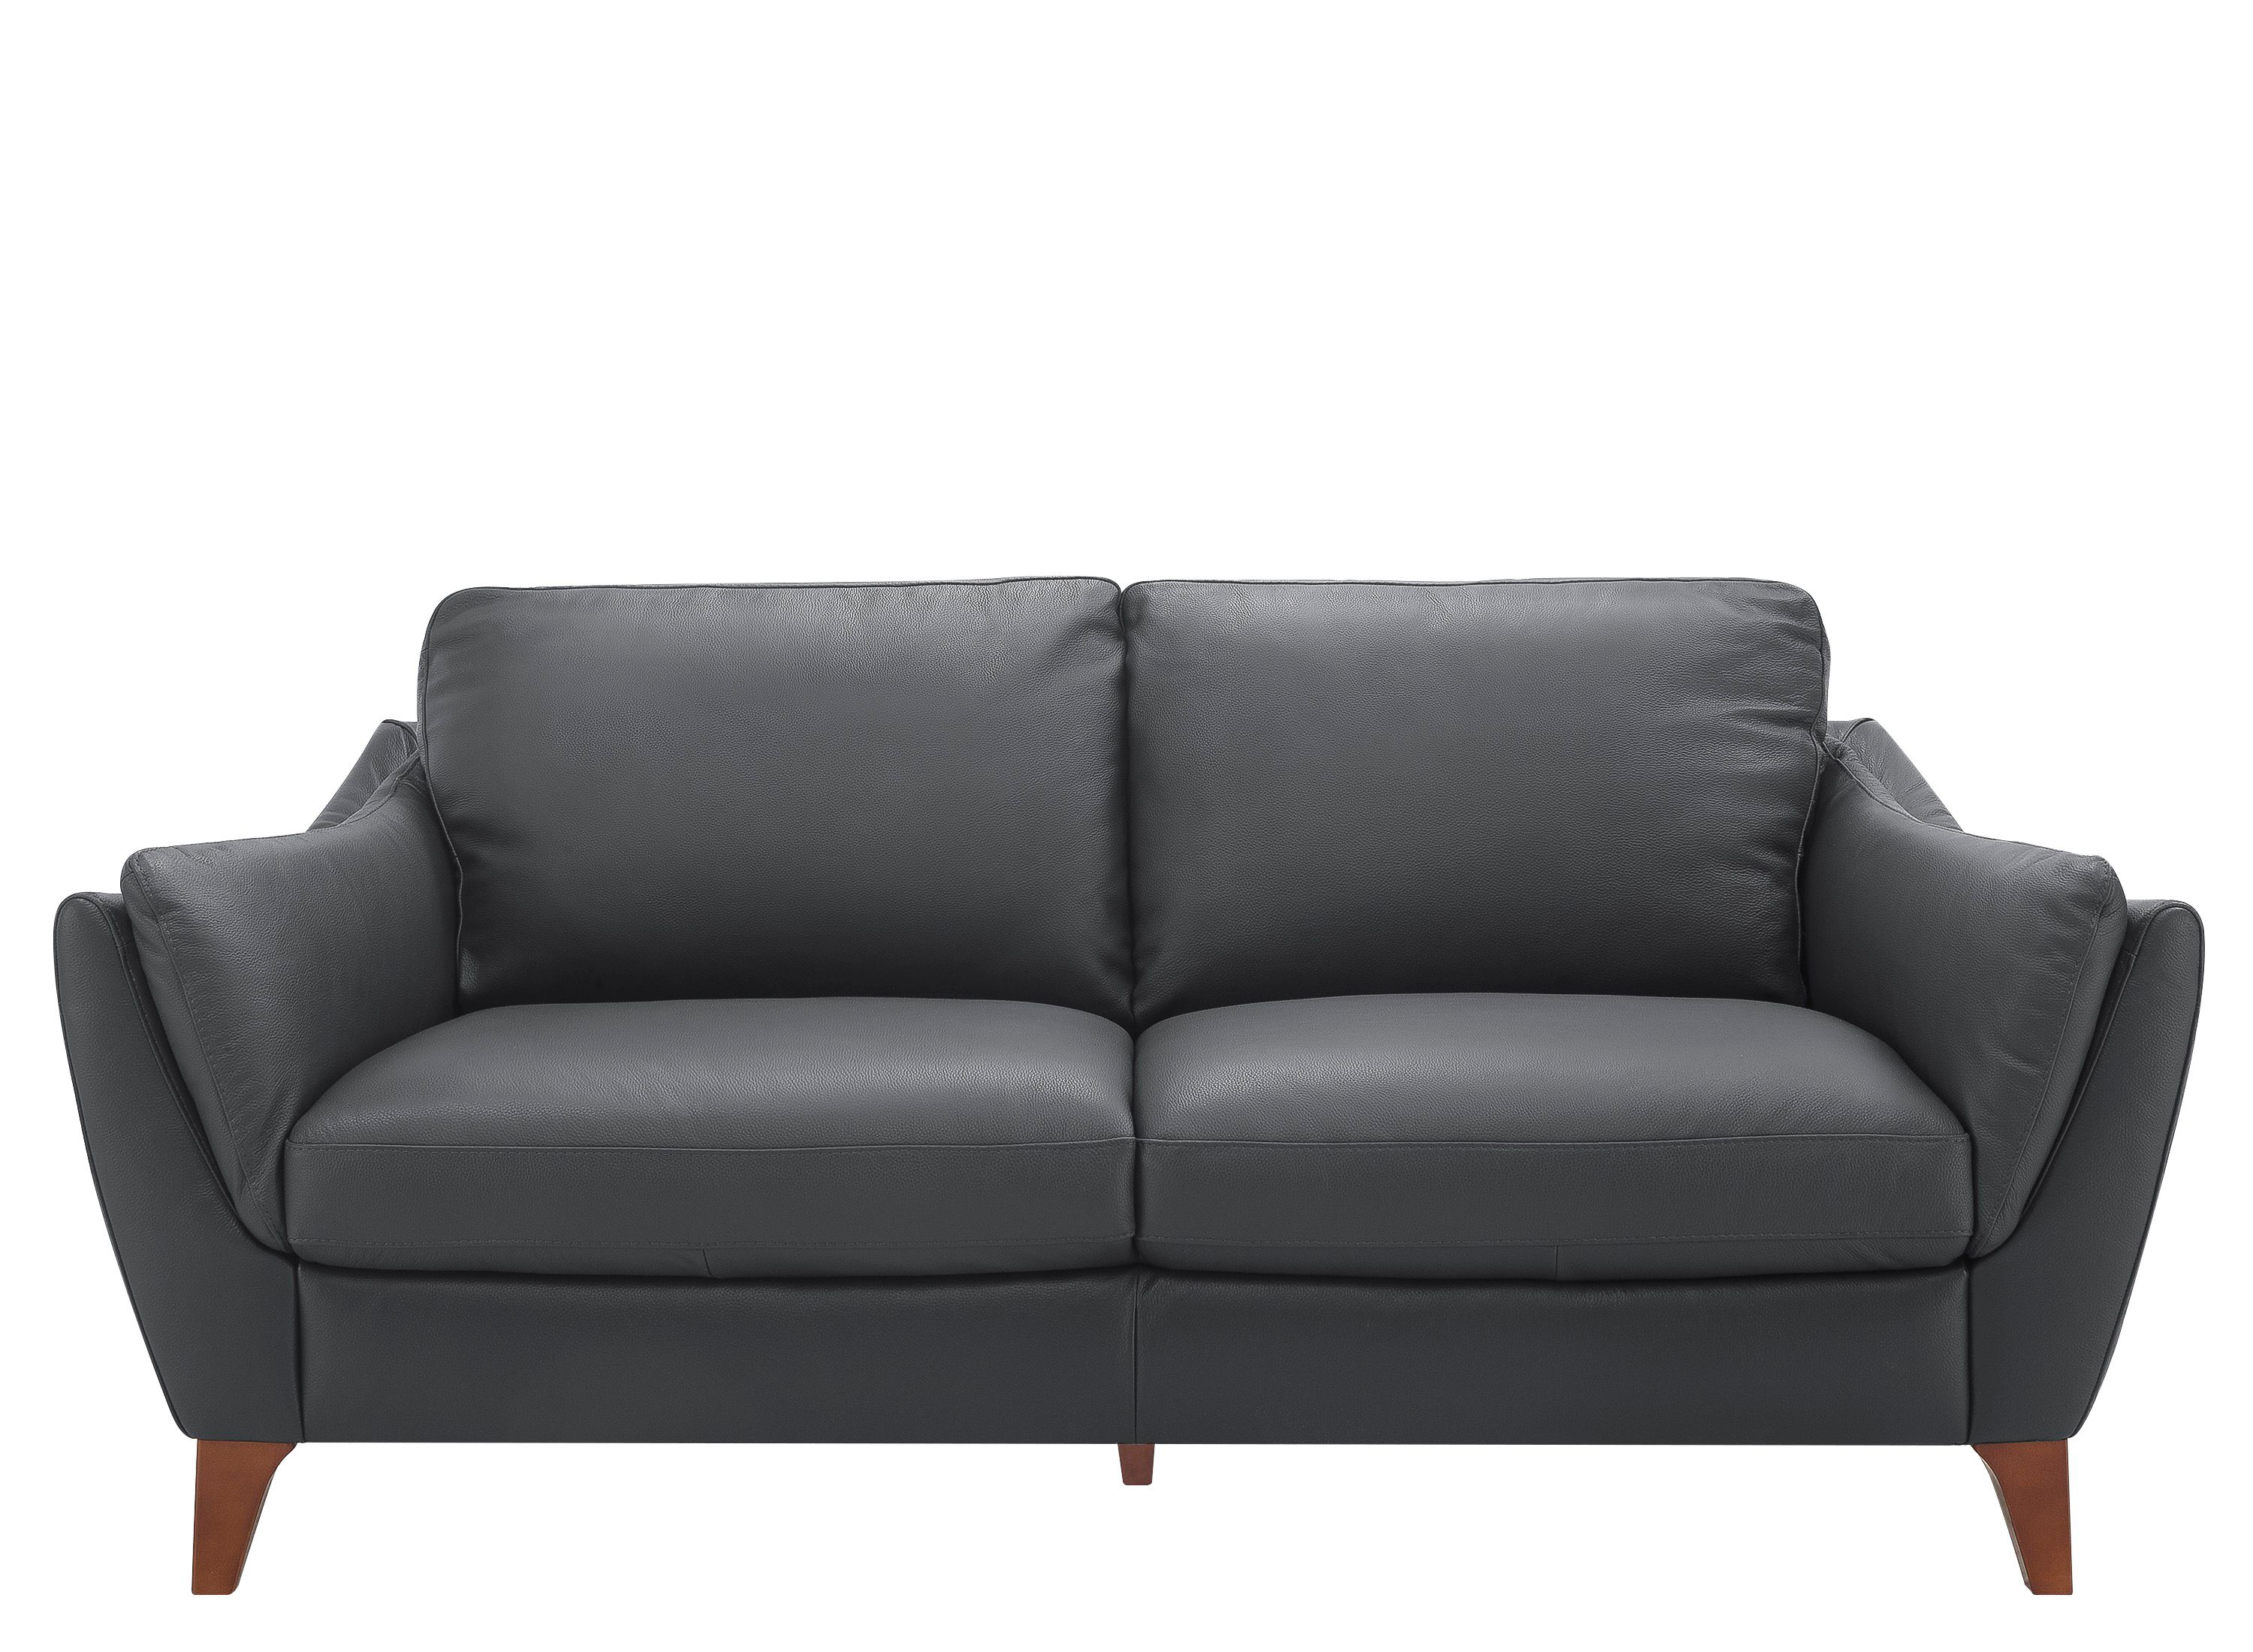 greccio leather sofa in gray by natuzzi